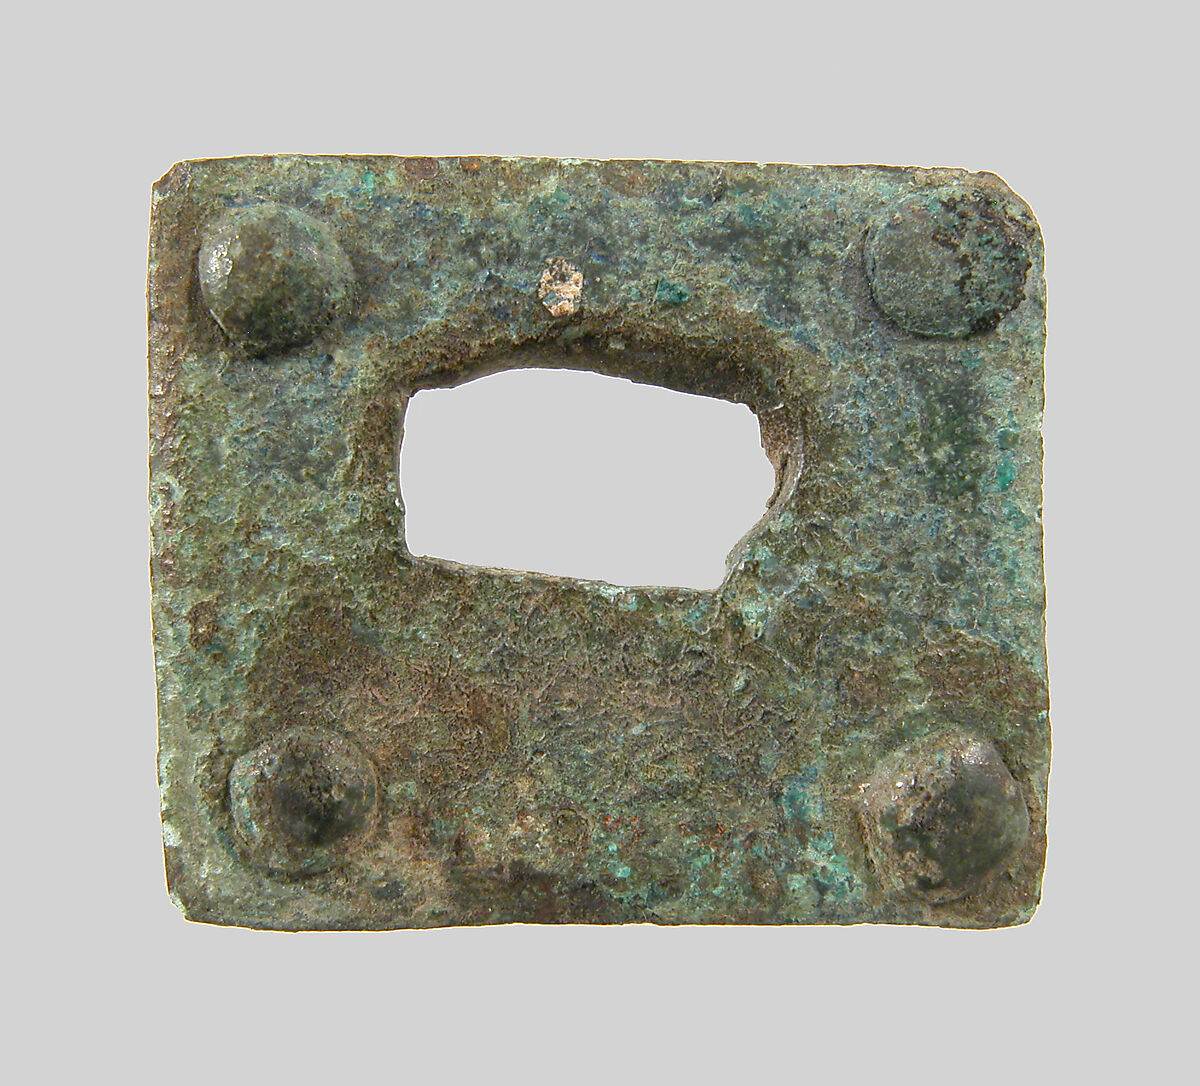 Rectangular Plaque, Copper alloy, Frankish 